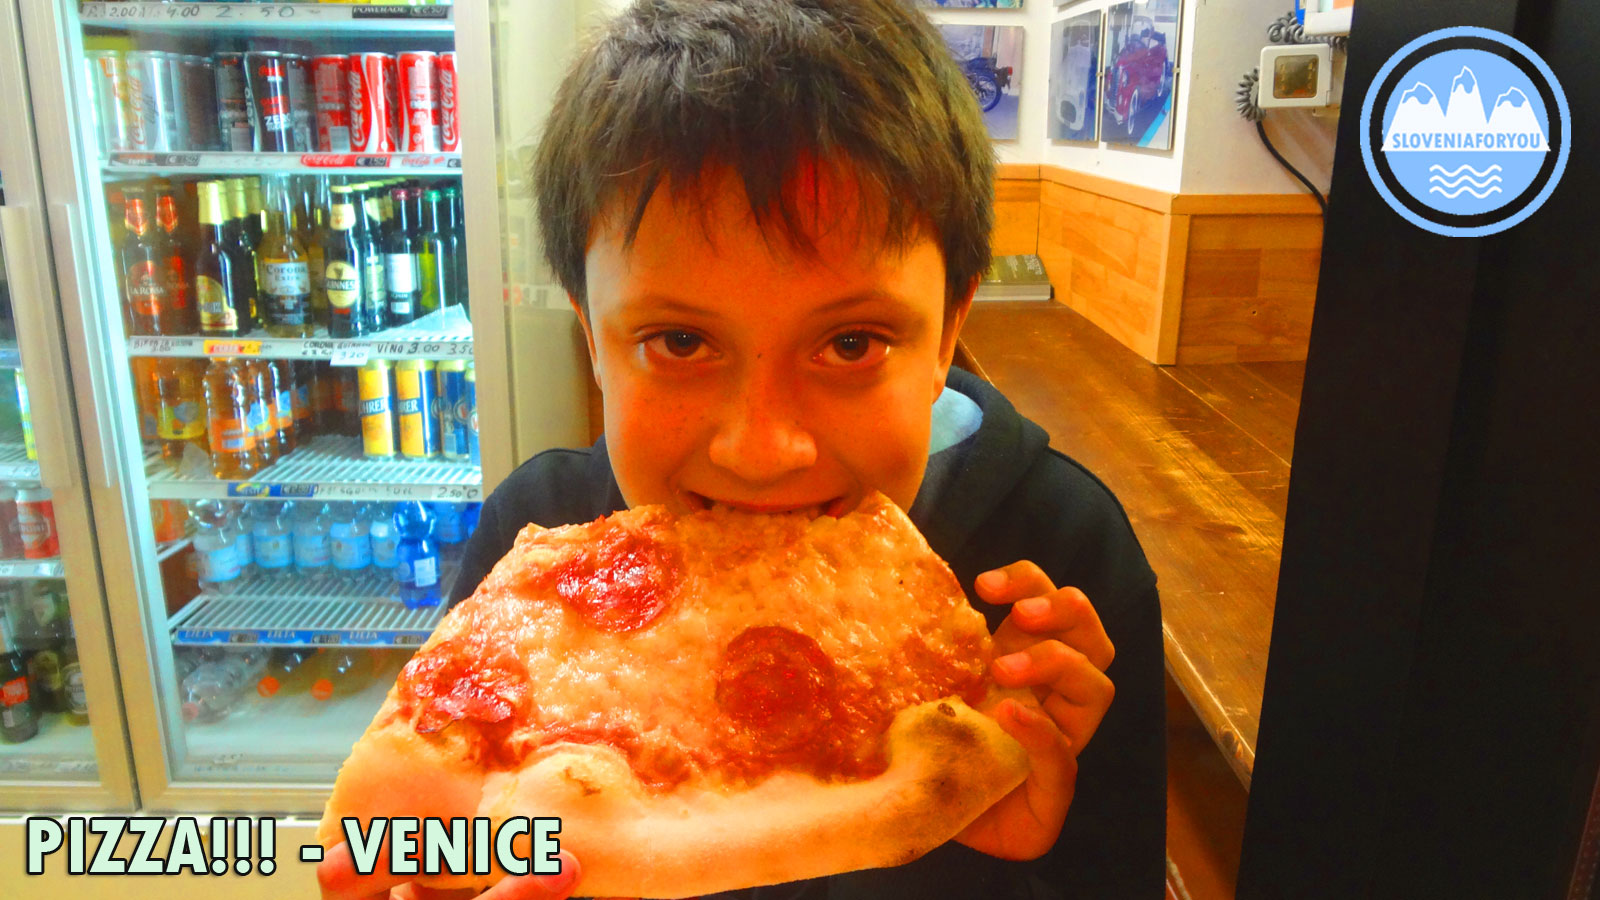 Pizza, Venice, Sloveniaforyou